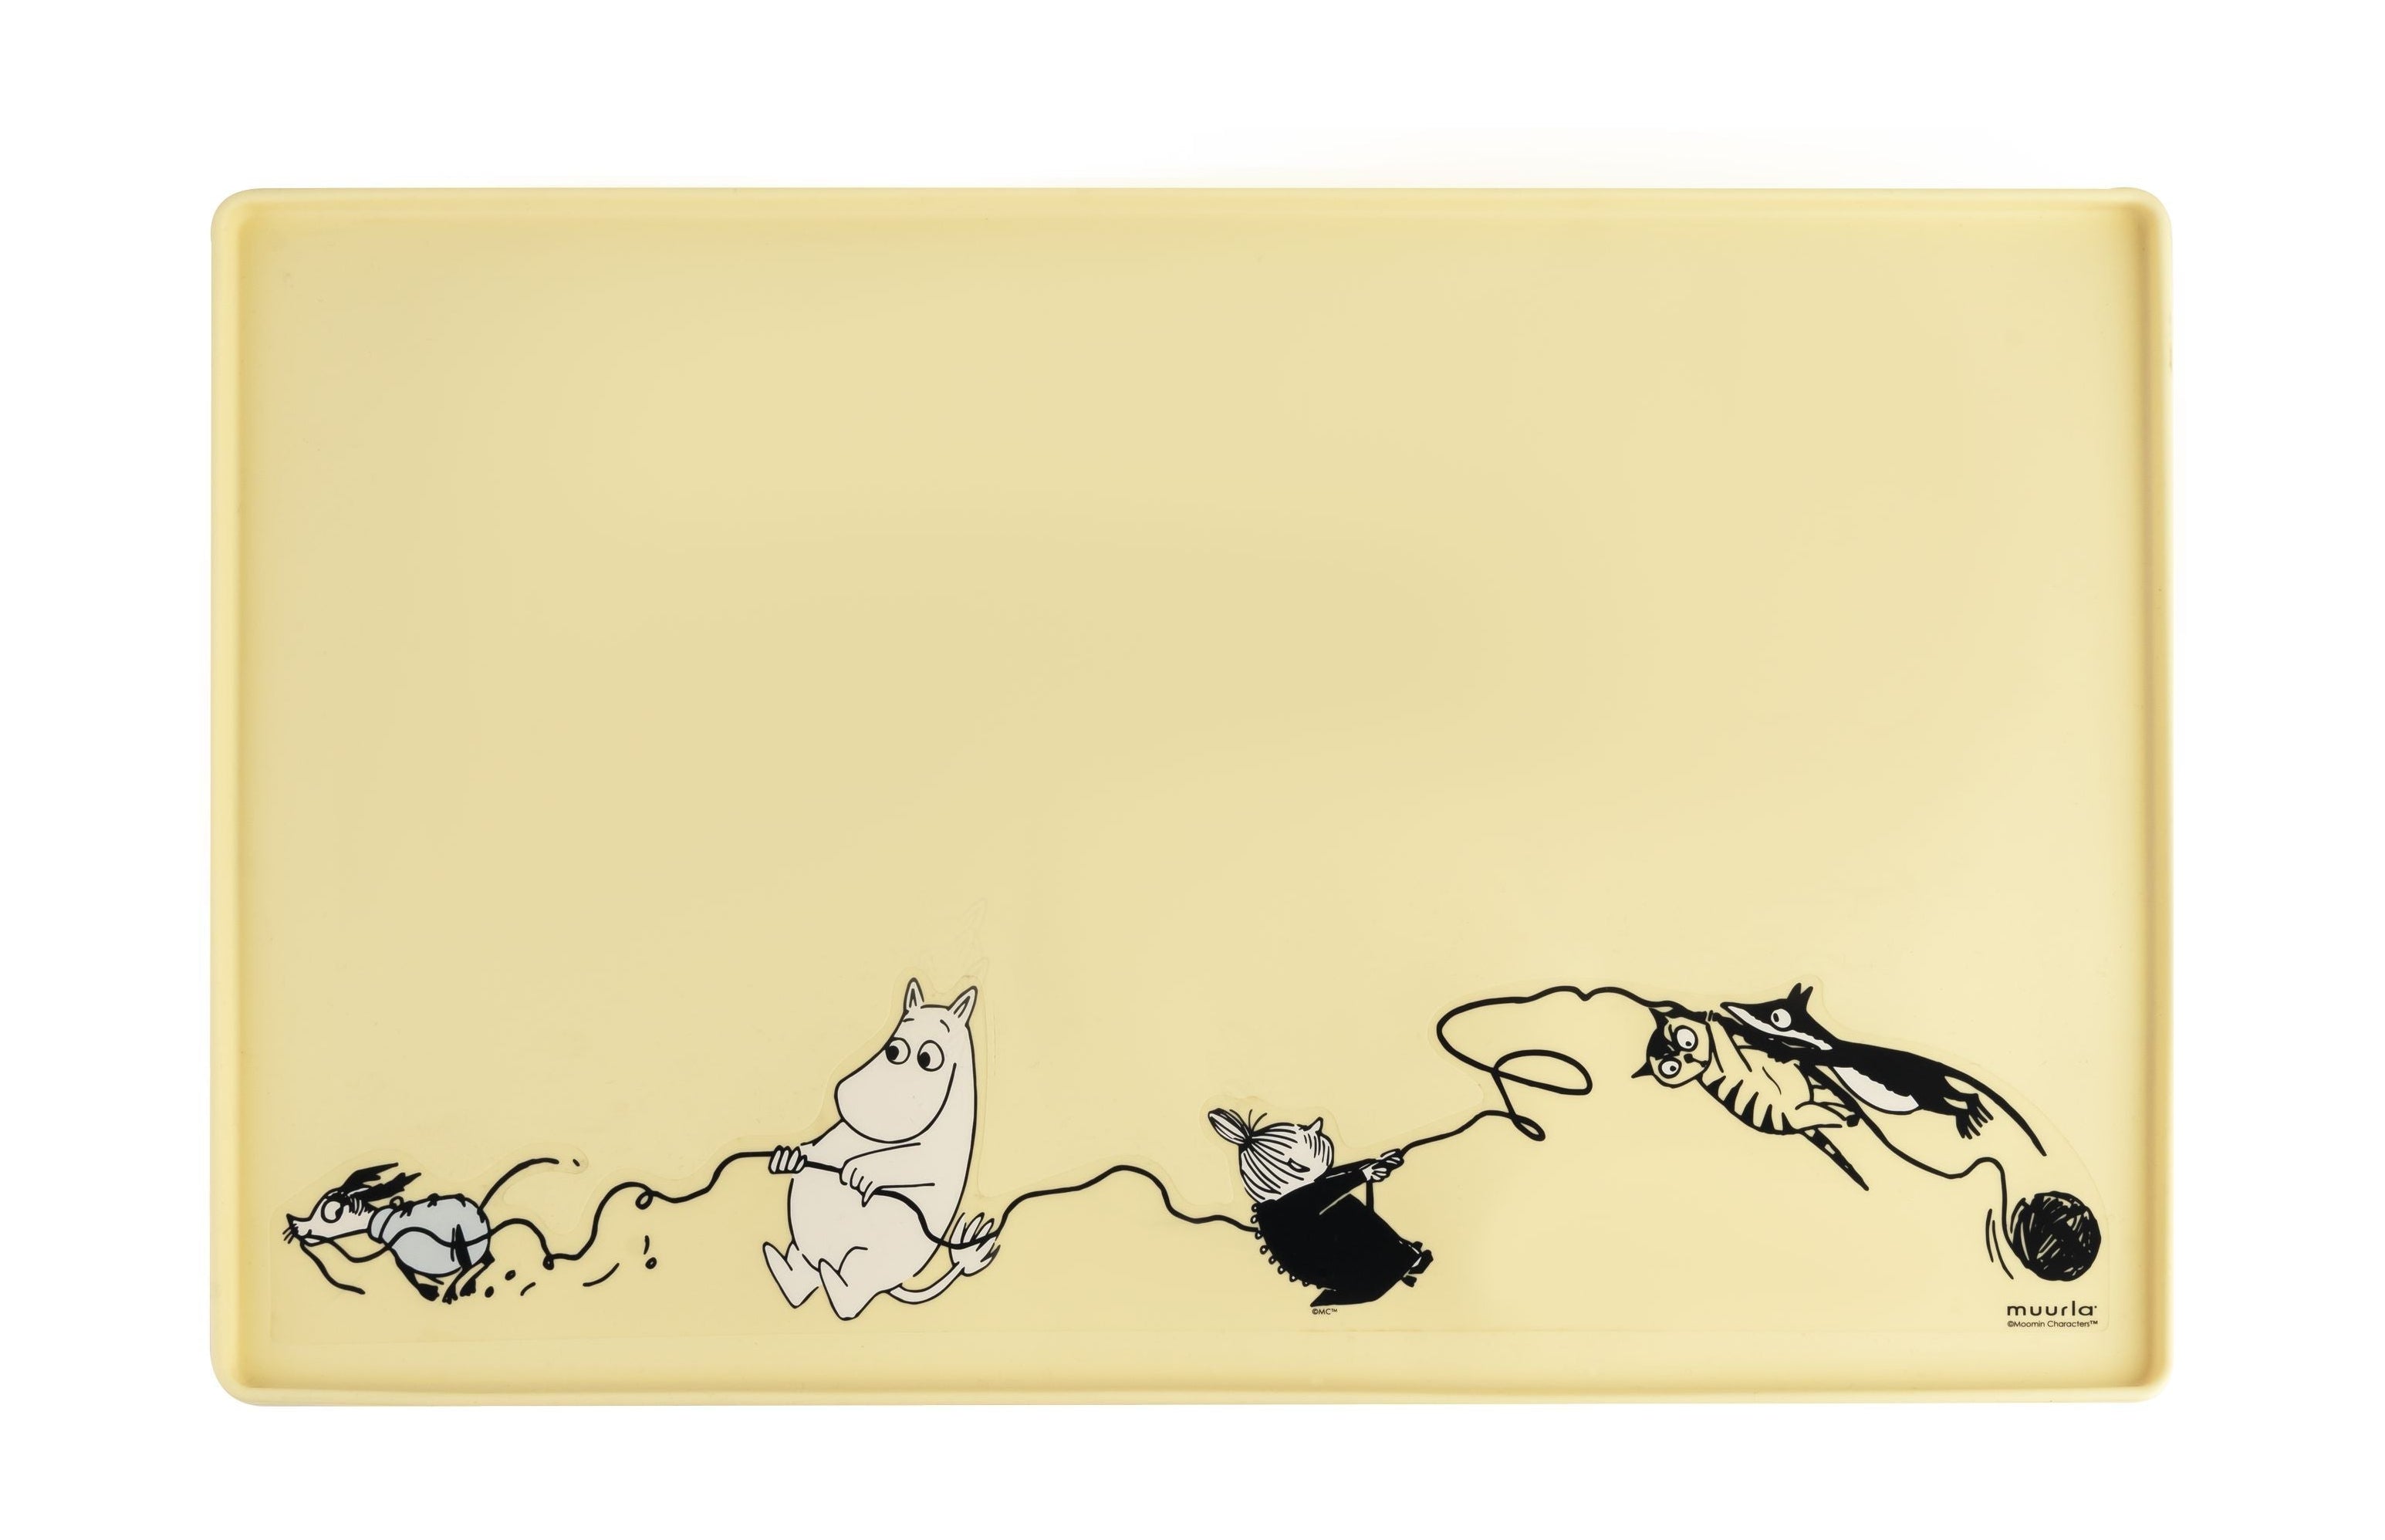 Muurla Moomin Animali del tappetino in silicone, giallo